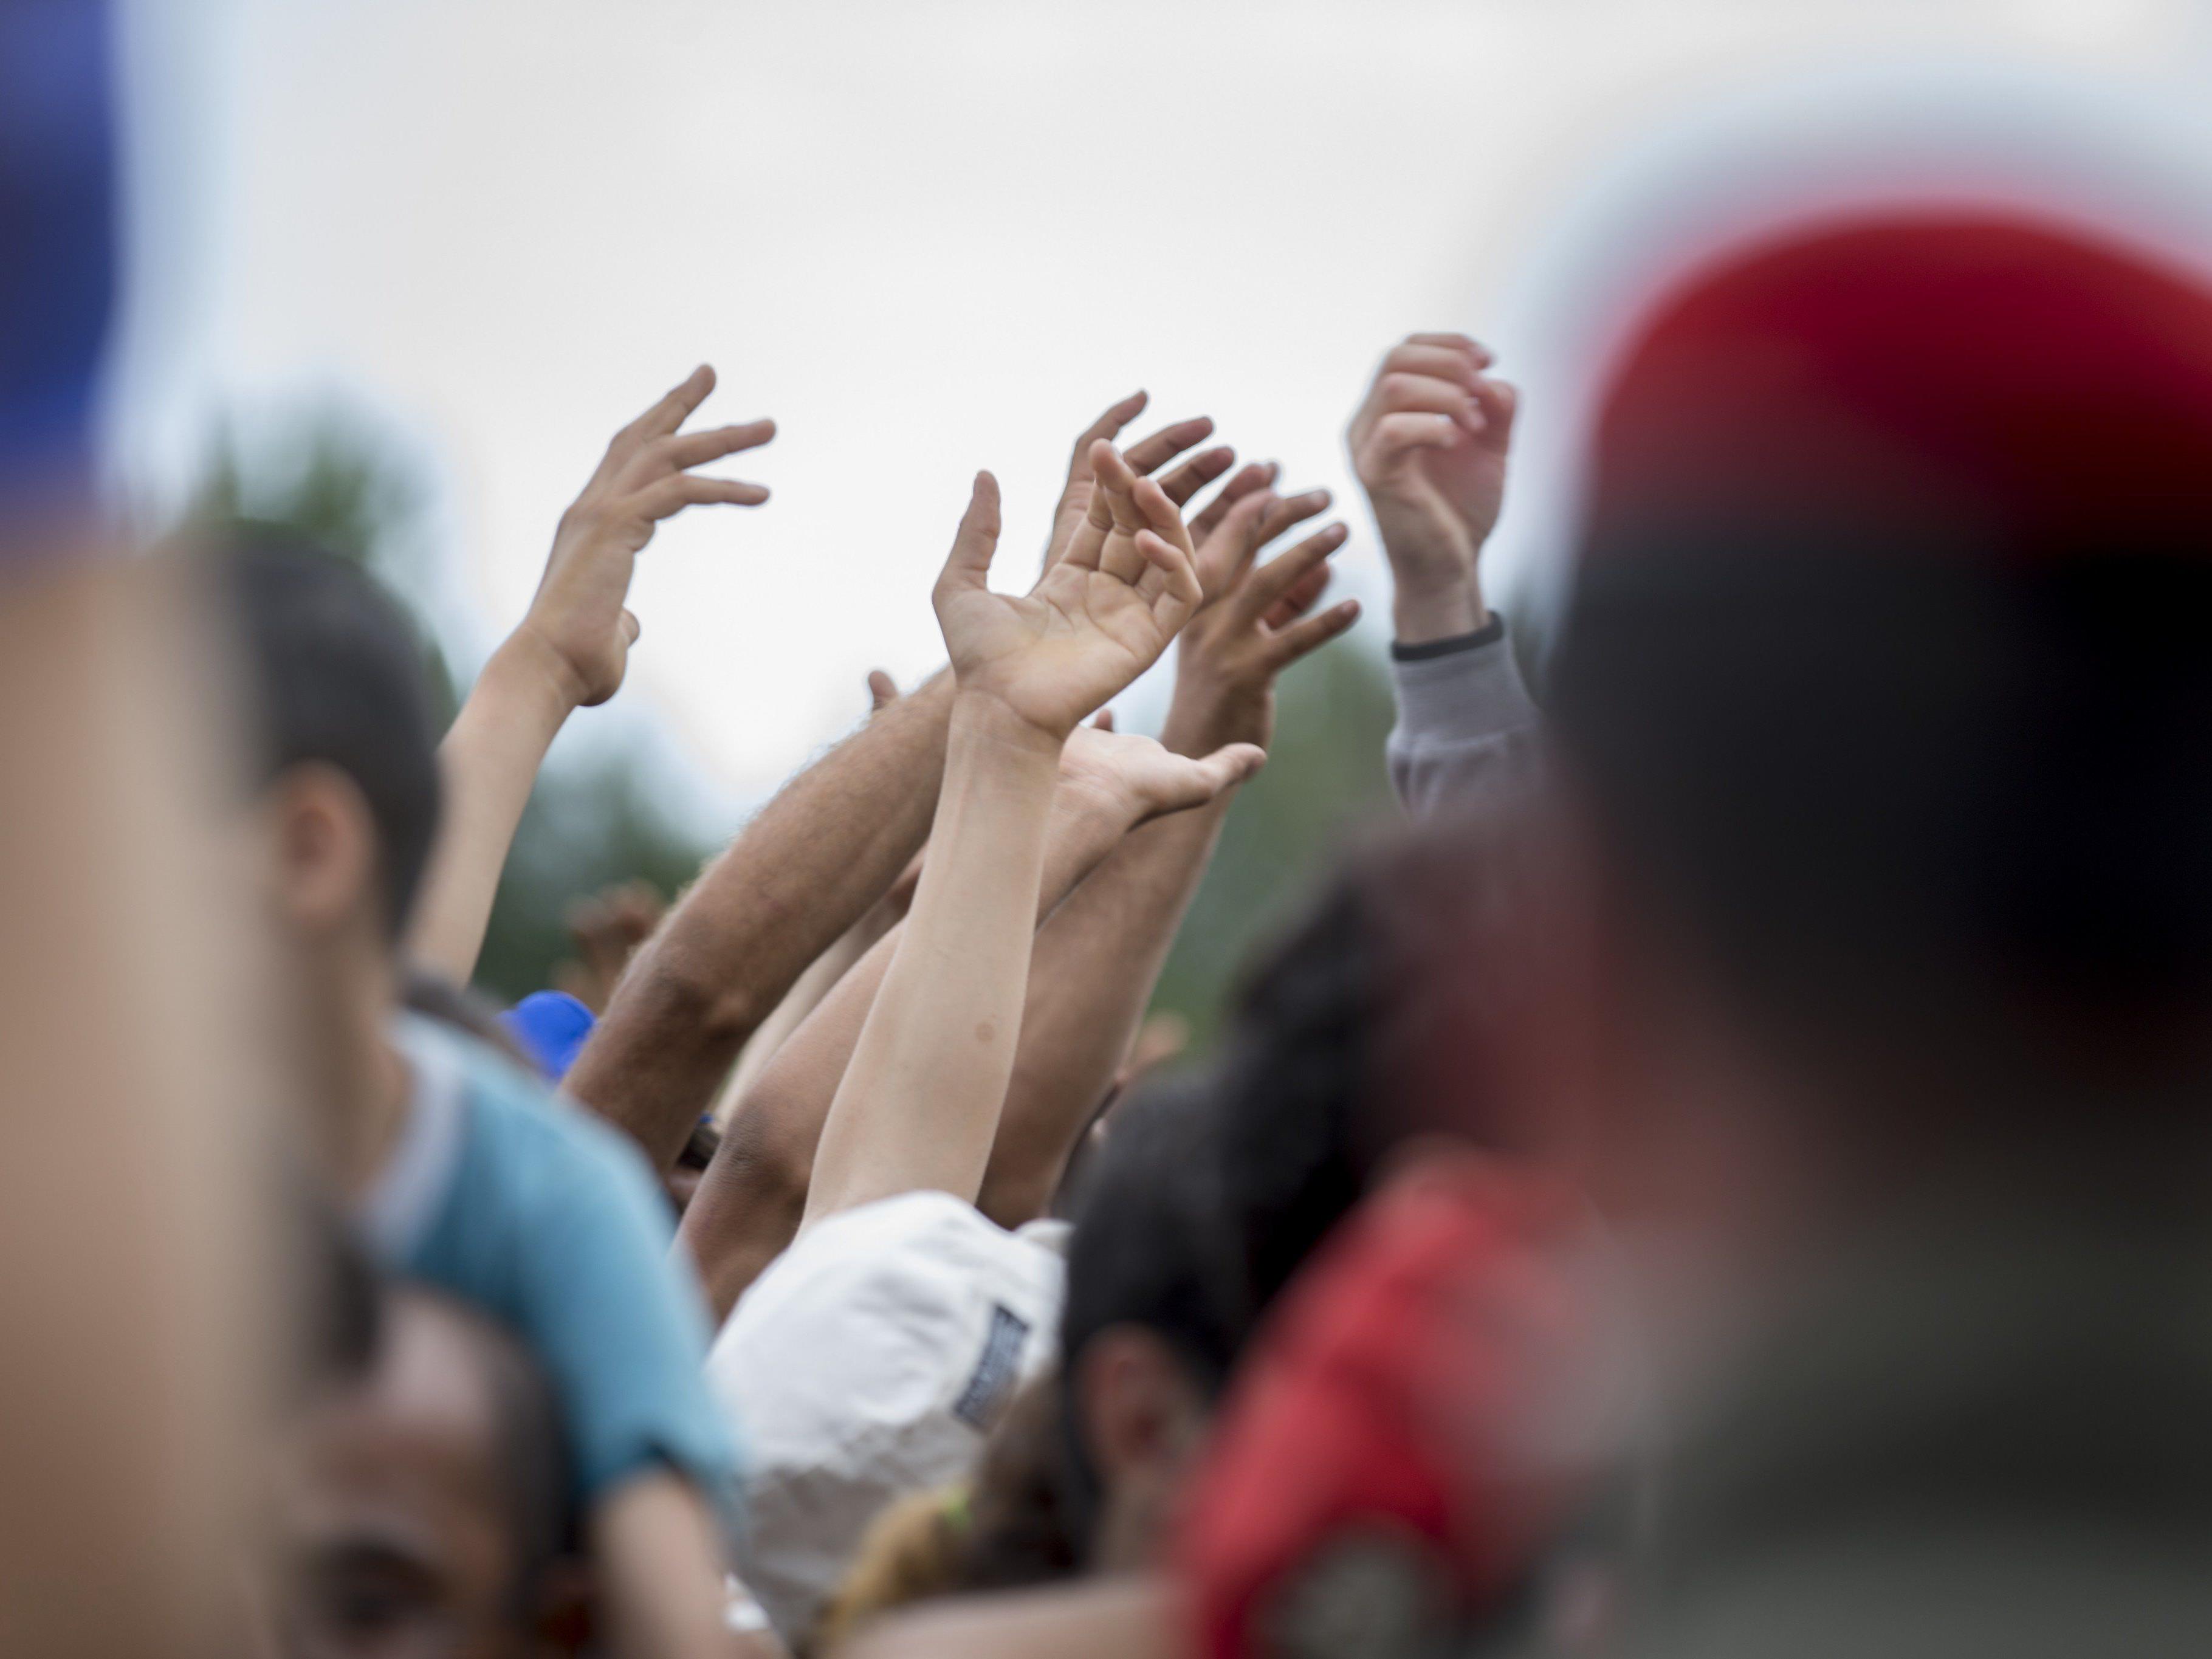 Flüchtlinge - 12.400 Ankömmlinge in Nordeuropa in zwei Wochen